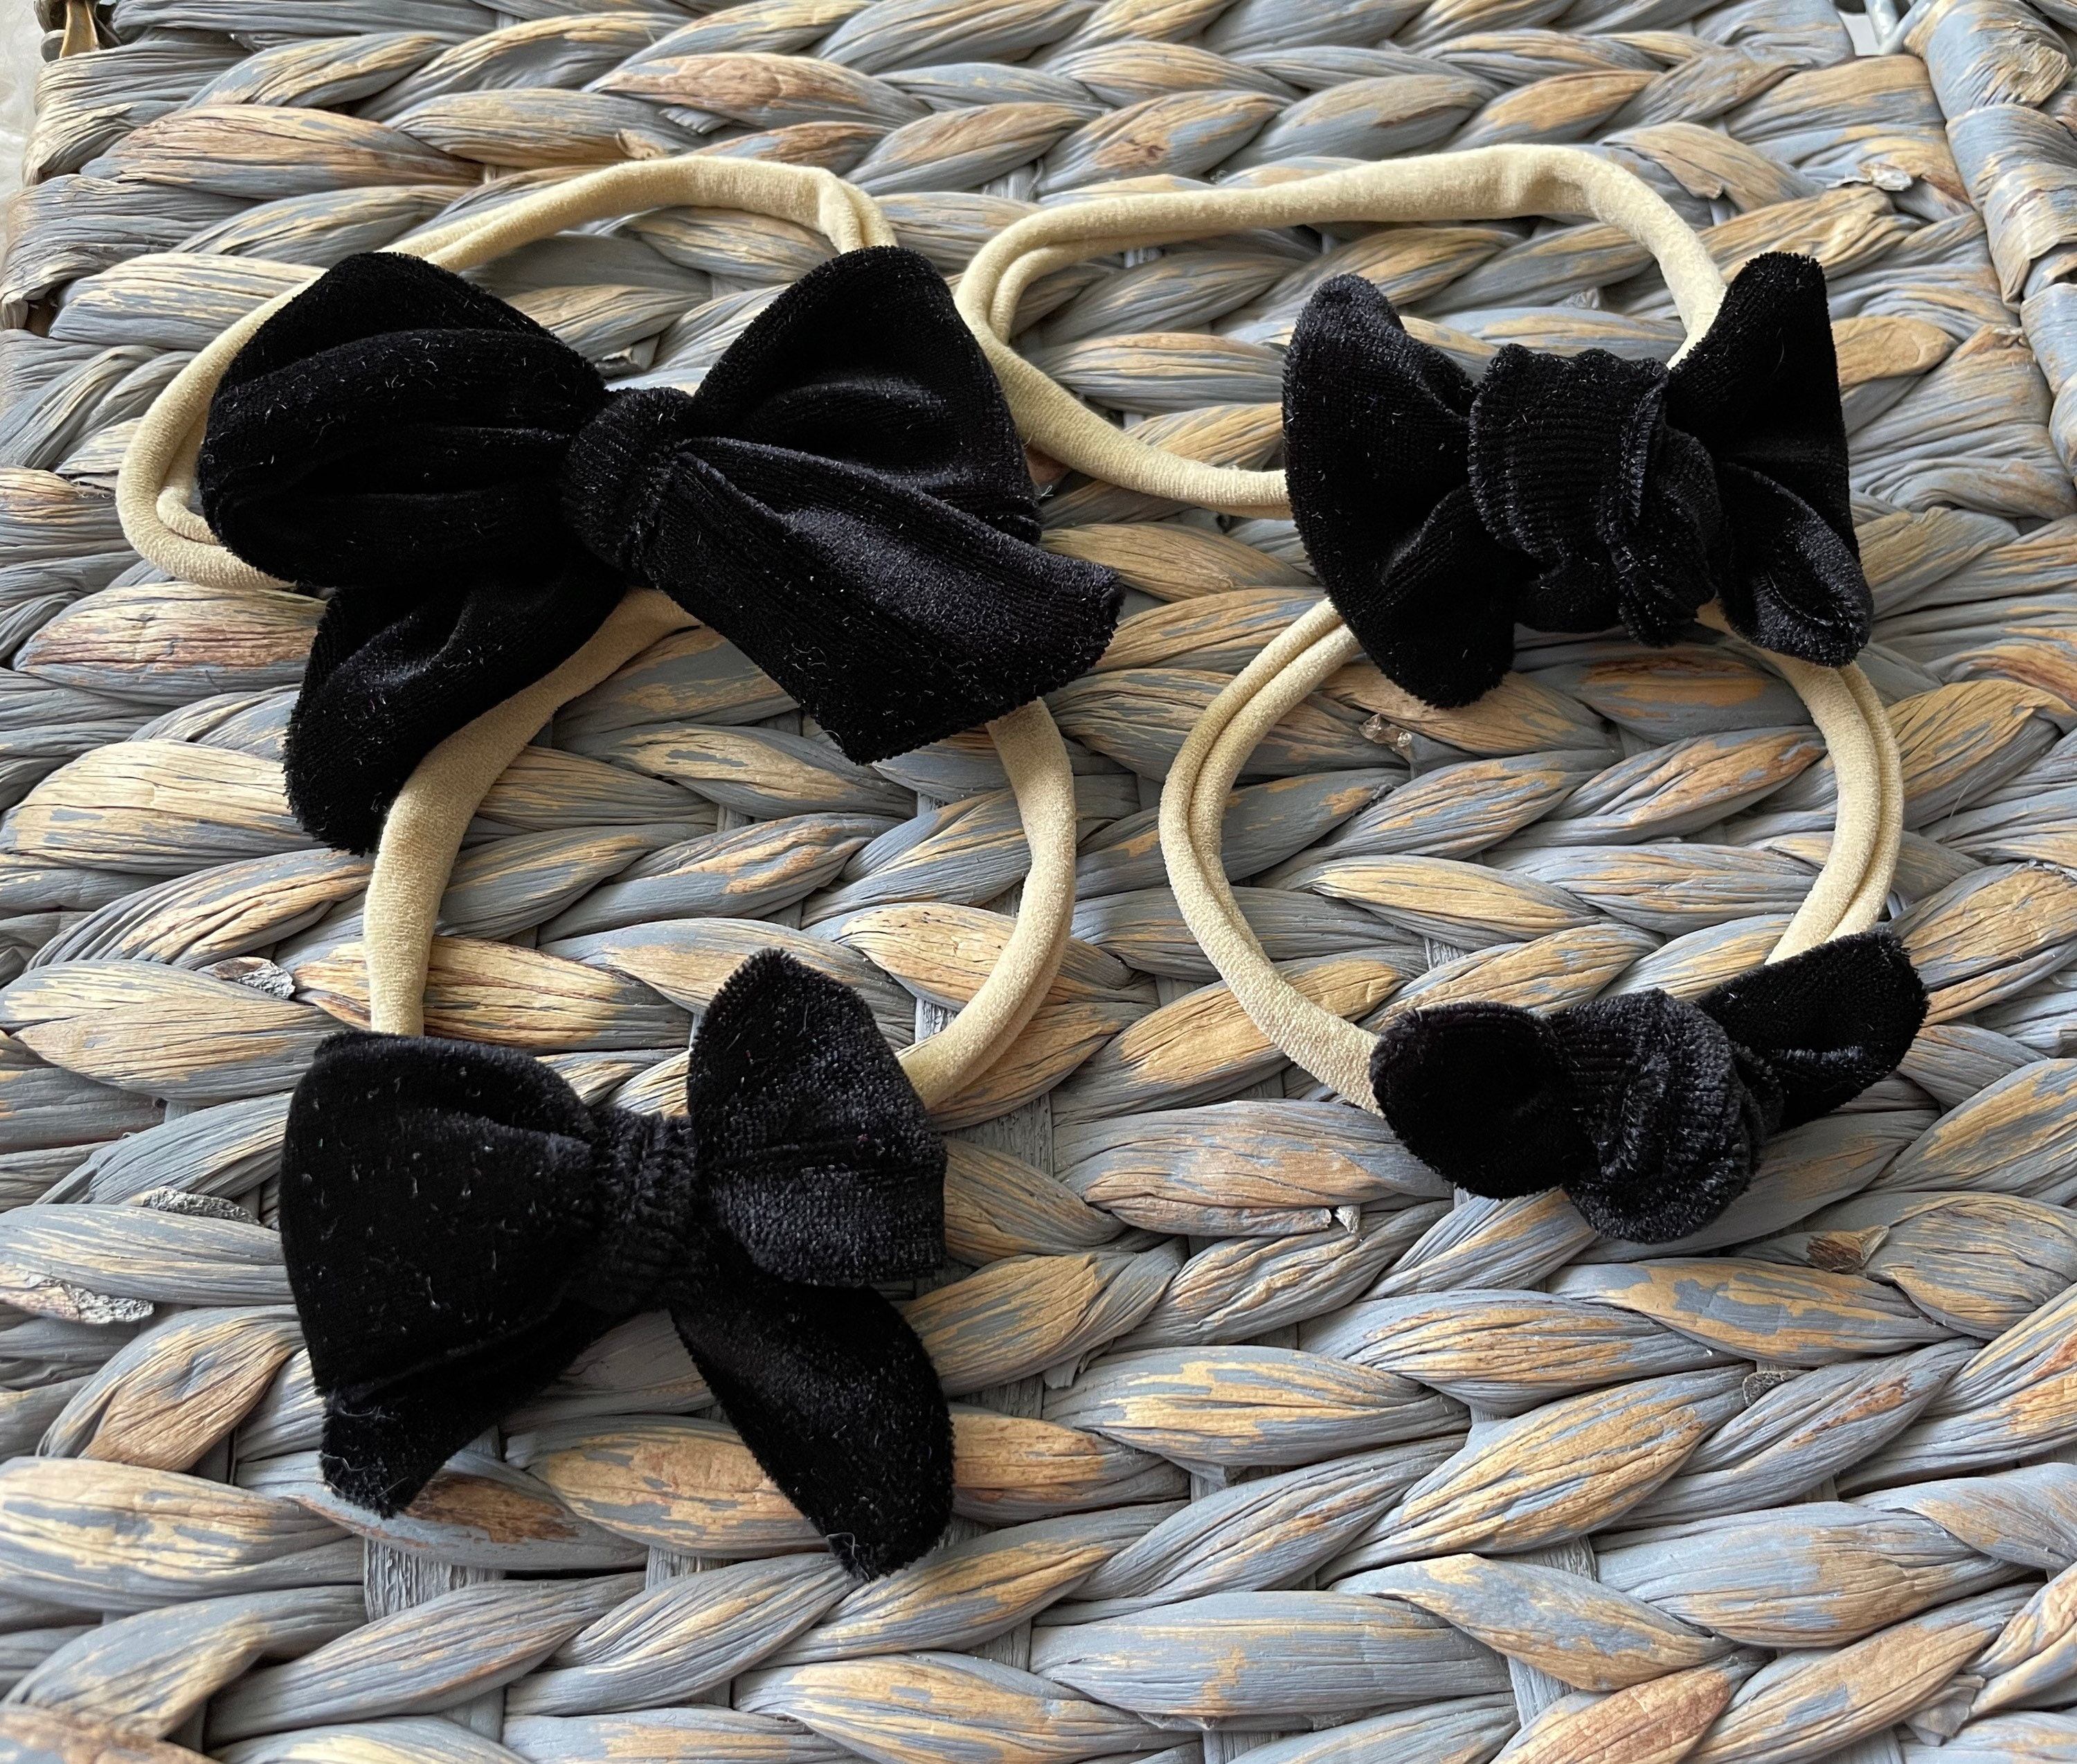 Black Velvet Bow Baby Headband – Sweetheart & Company